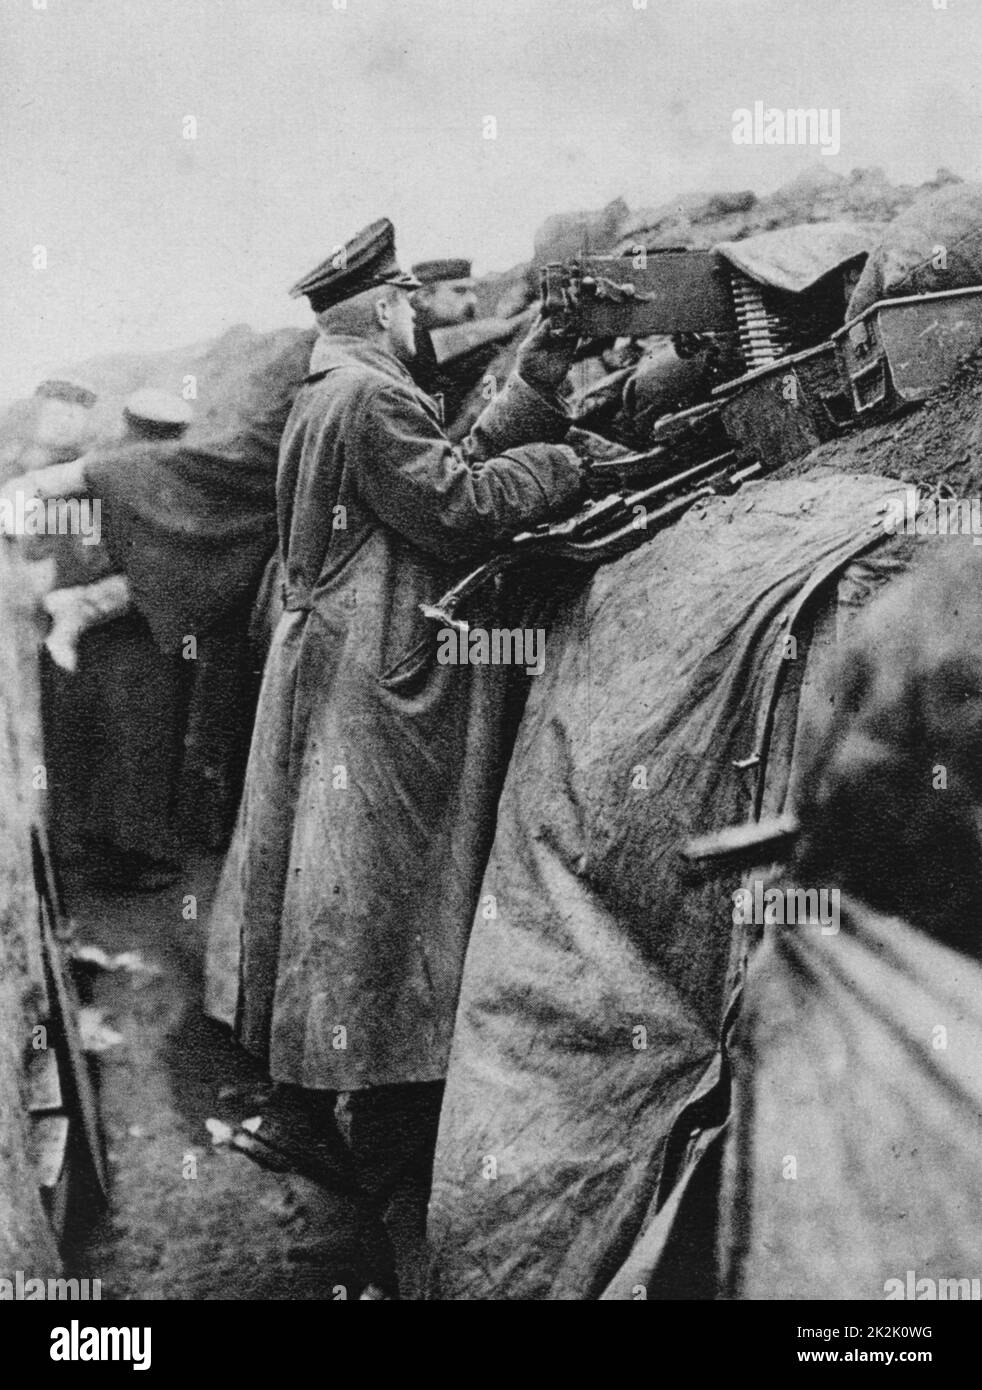 Der erste Weltkrieg 1914-1918: Grabenkämpfe - Deutscher Soldat stehend in einem Graben und feuern ein Maschinengewehr, 1915. Militär, Armee, Waffe, Automatische Stockfoto